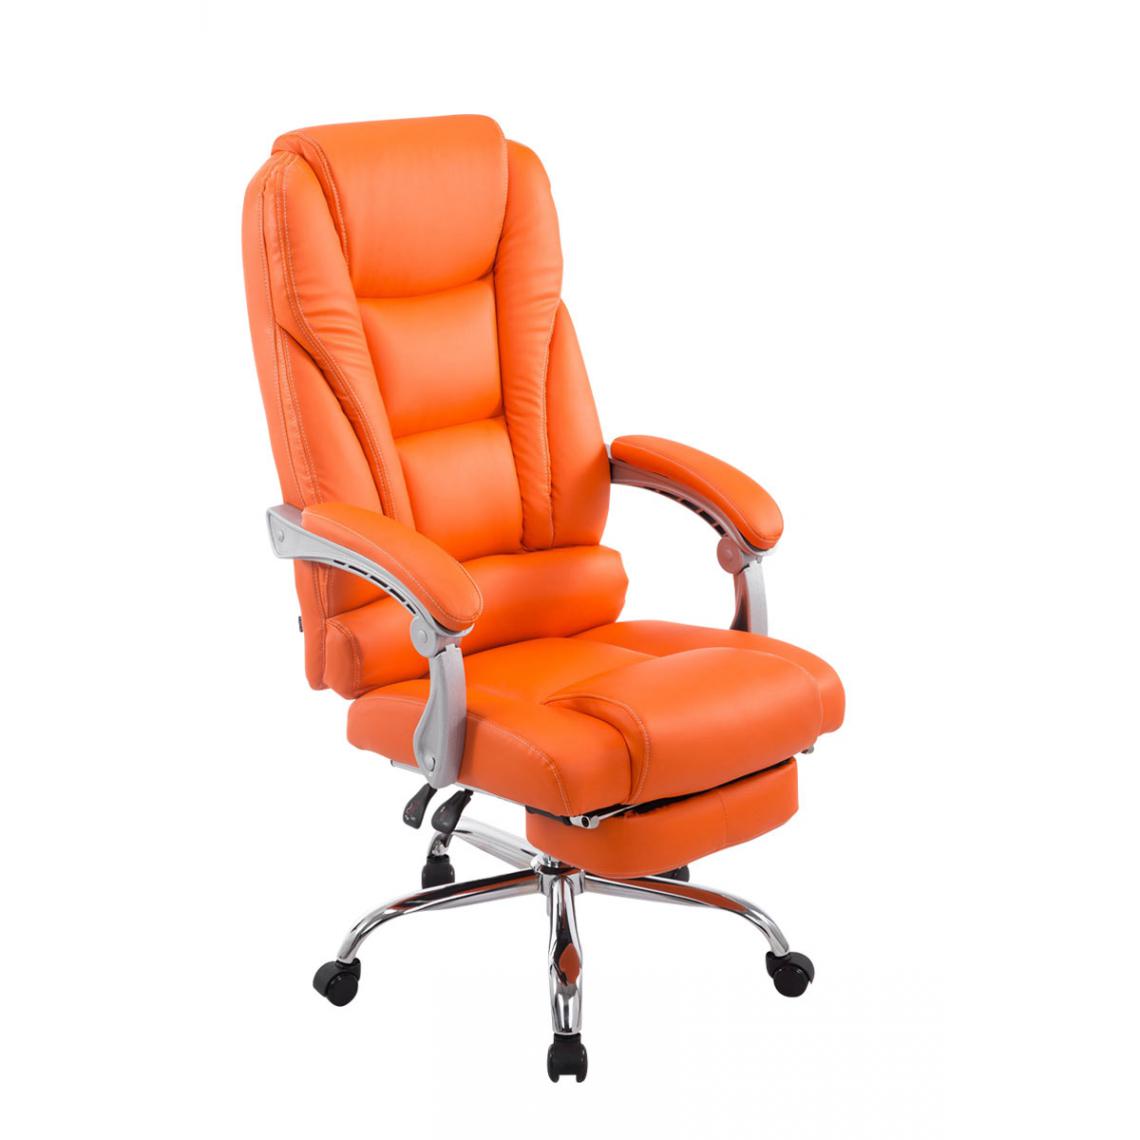 Icaverne - Joli Chaise de bureau reference Quito couleur Orange - Chaises